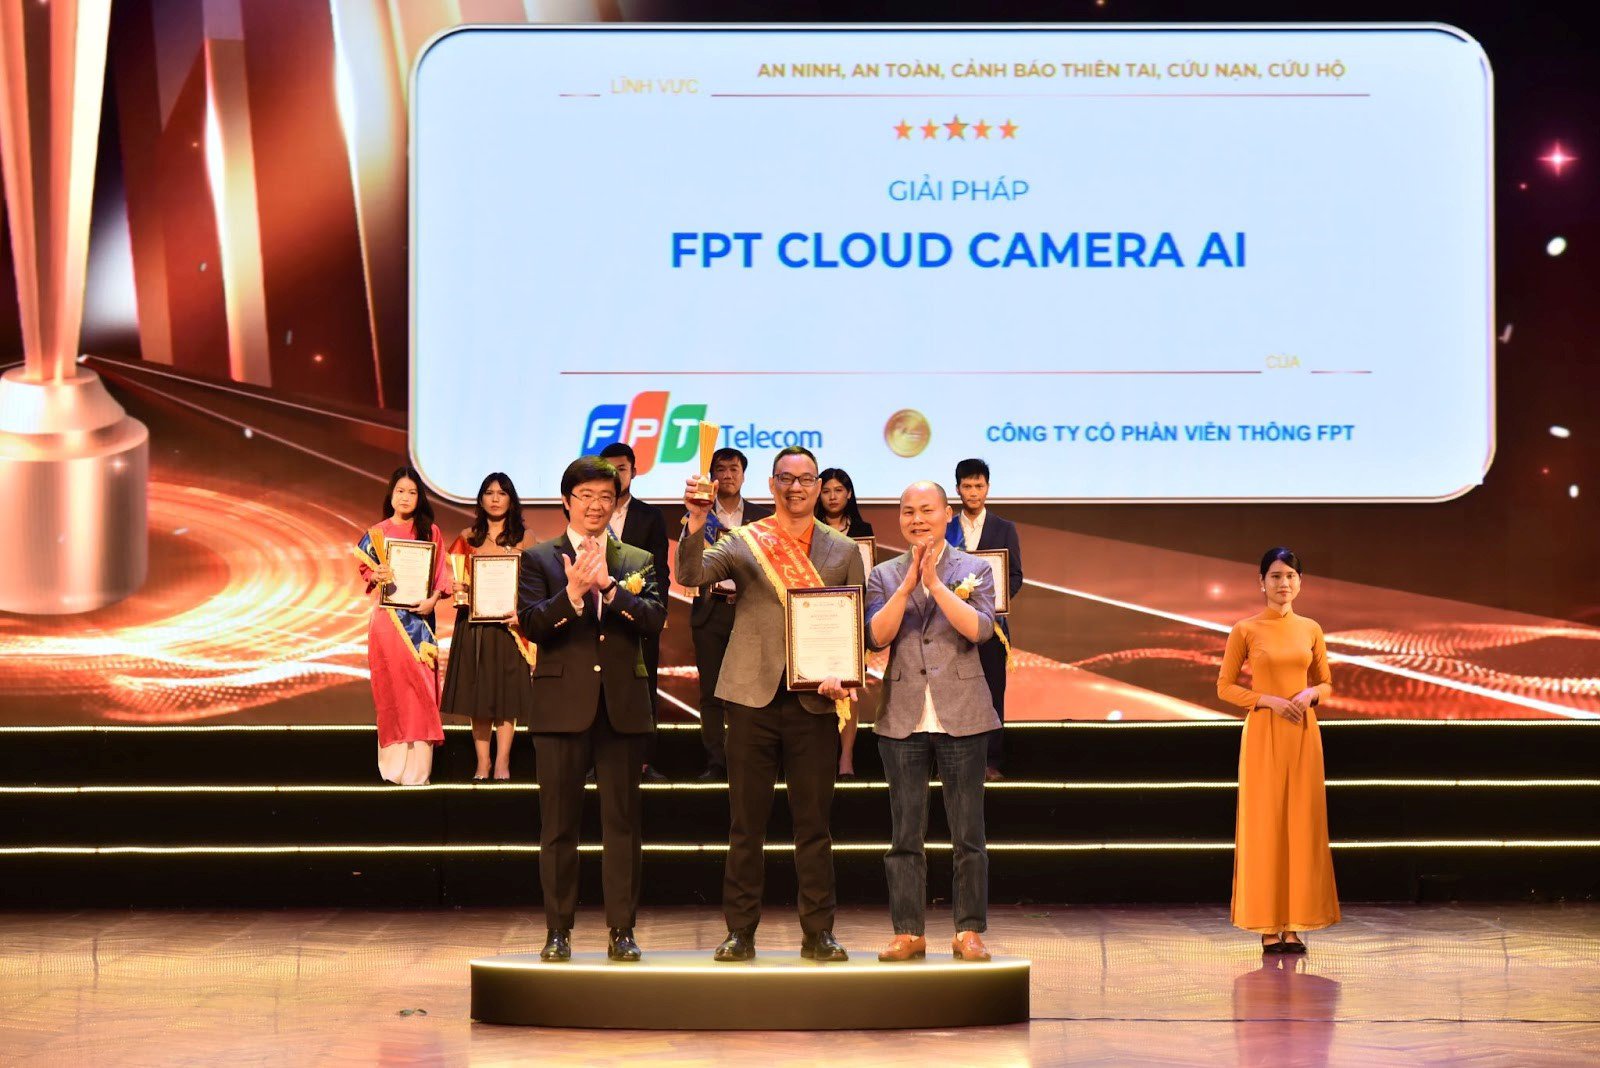 Ông Đinh Cao Sơn - Phó Giám đốc FPT Camera lên nhận giải thưởng cho giải pháp FPT Cloud Camera AI